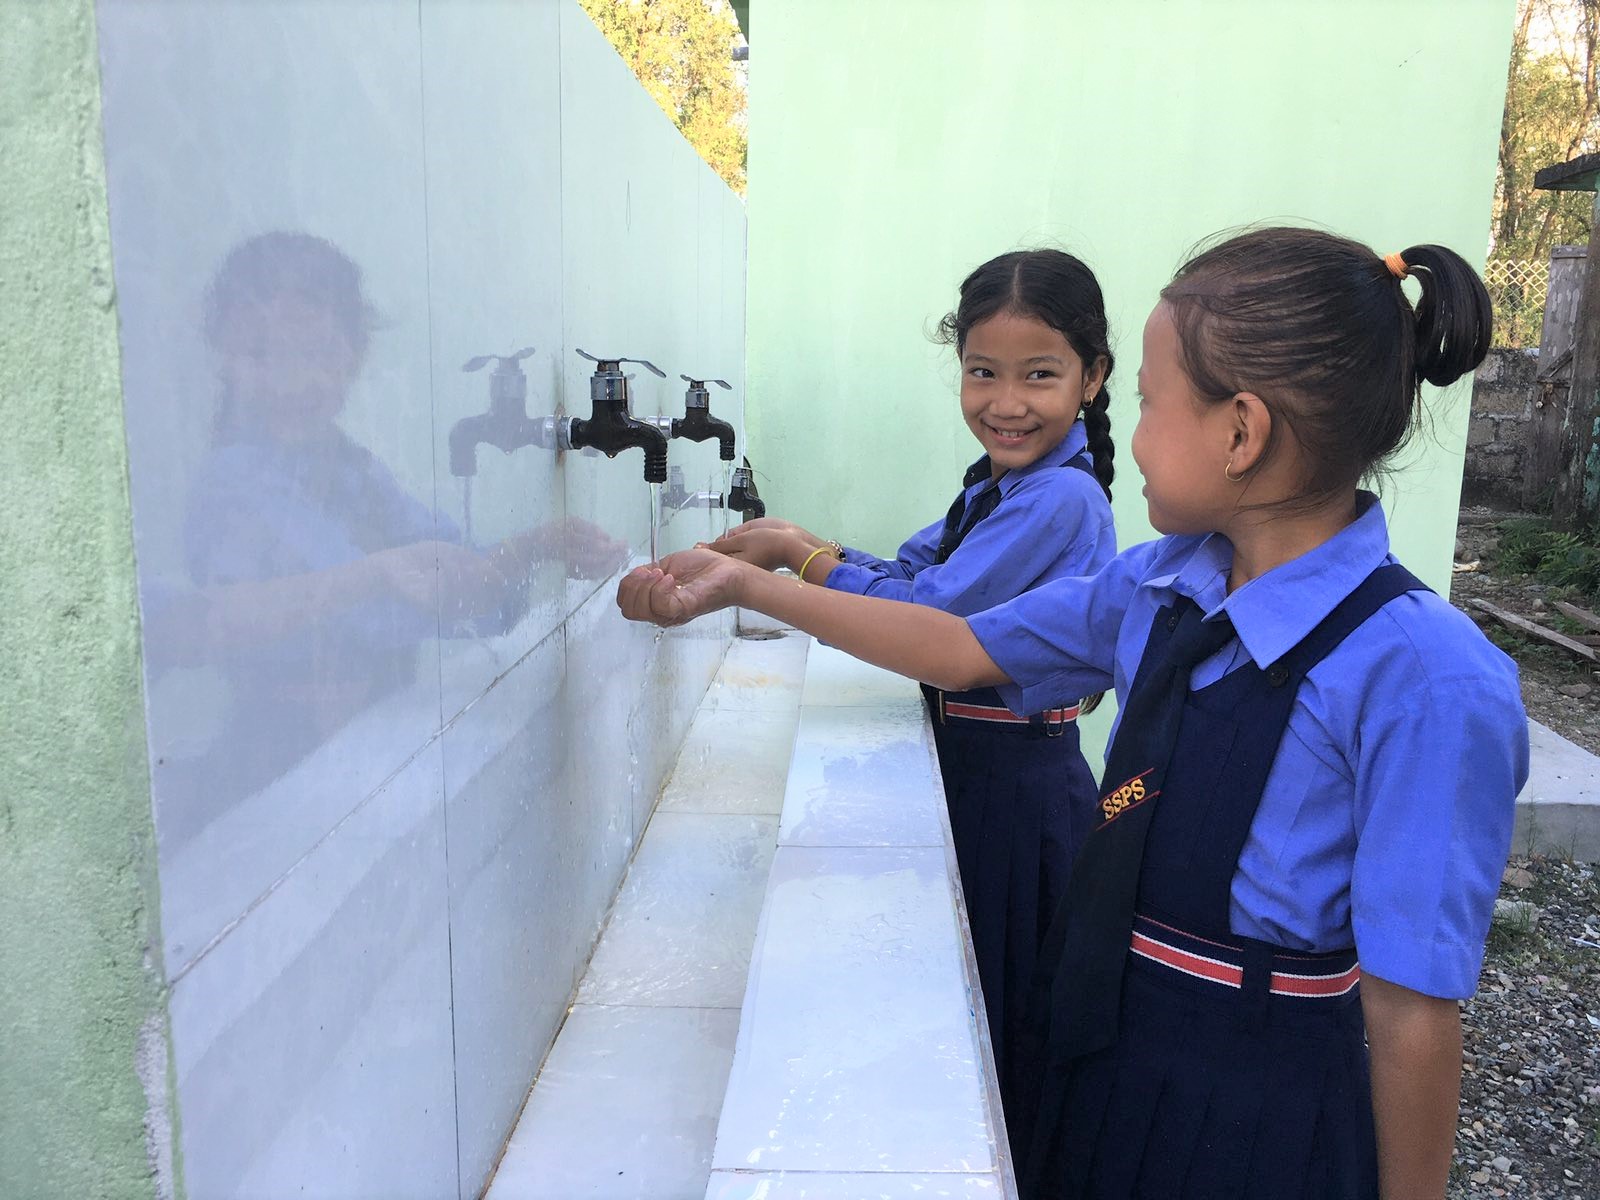 Zwei Mädchen stehen an einem Waschbecken und waschen sich die Hände unter fließendem Wasser